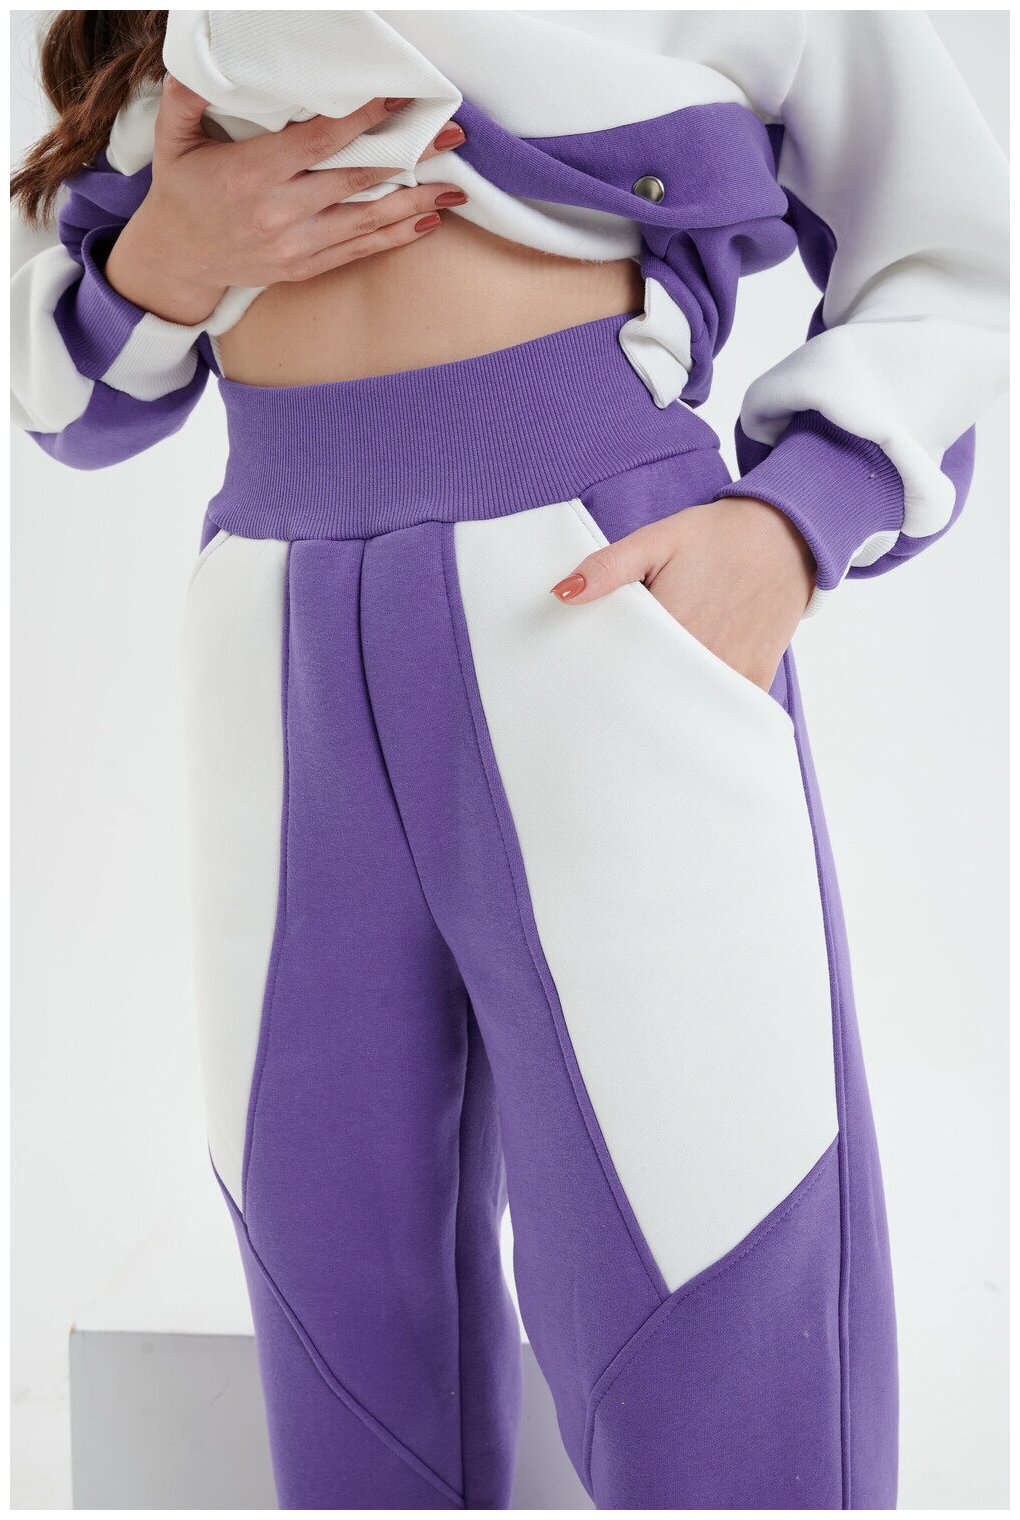 Брюки джоггеры Натали, оверсайз силуэт, повседневный стиль, карманы, размер 46, фиолетовый - фотография № 2